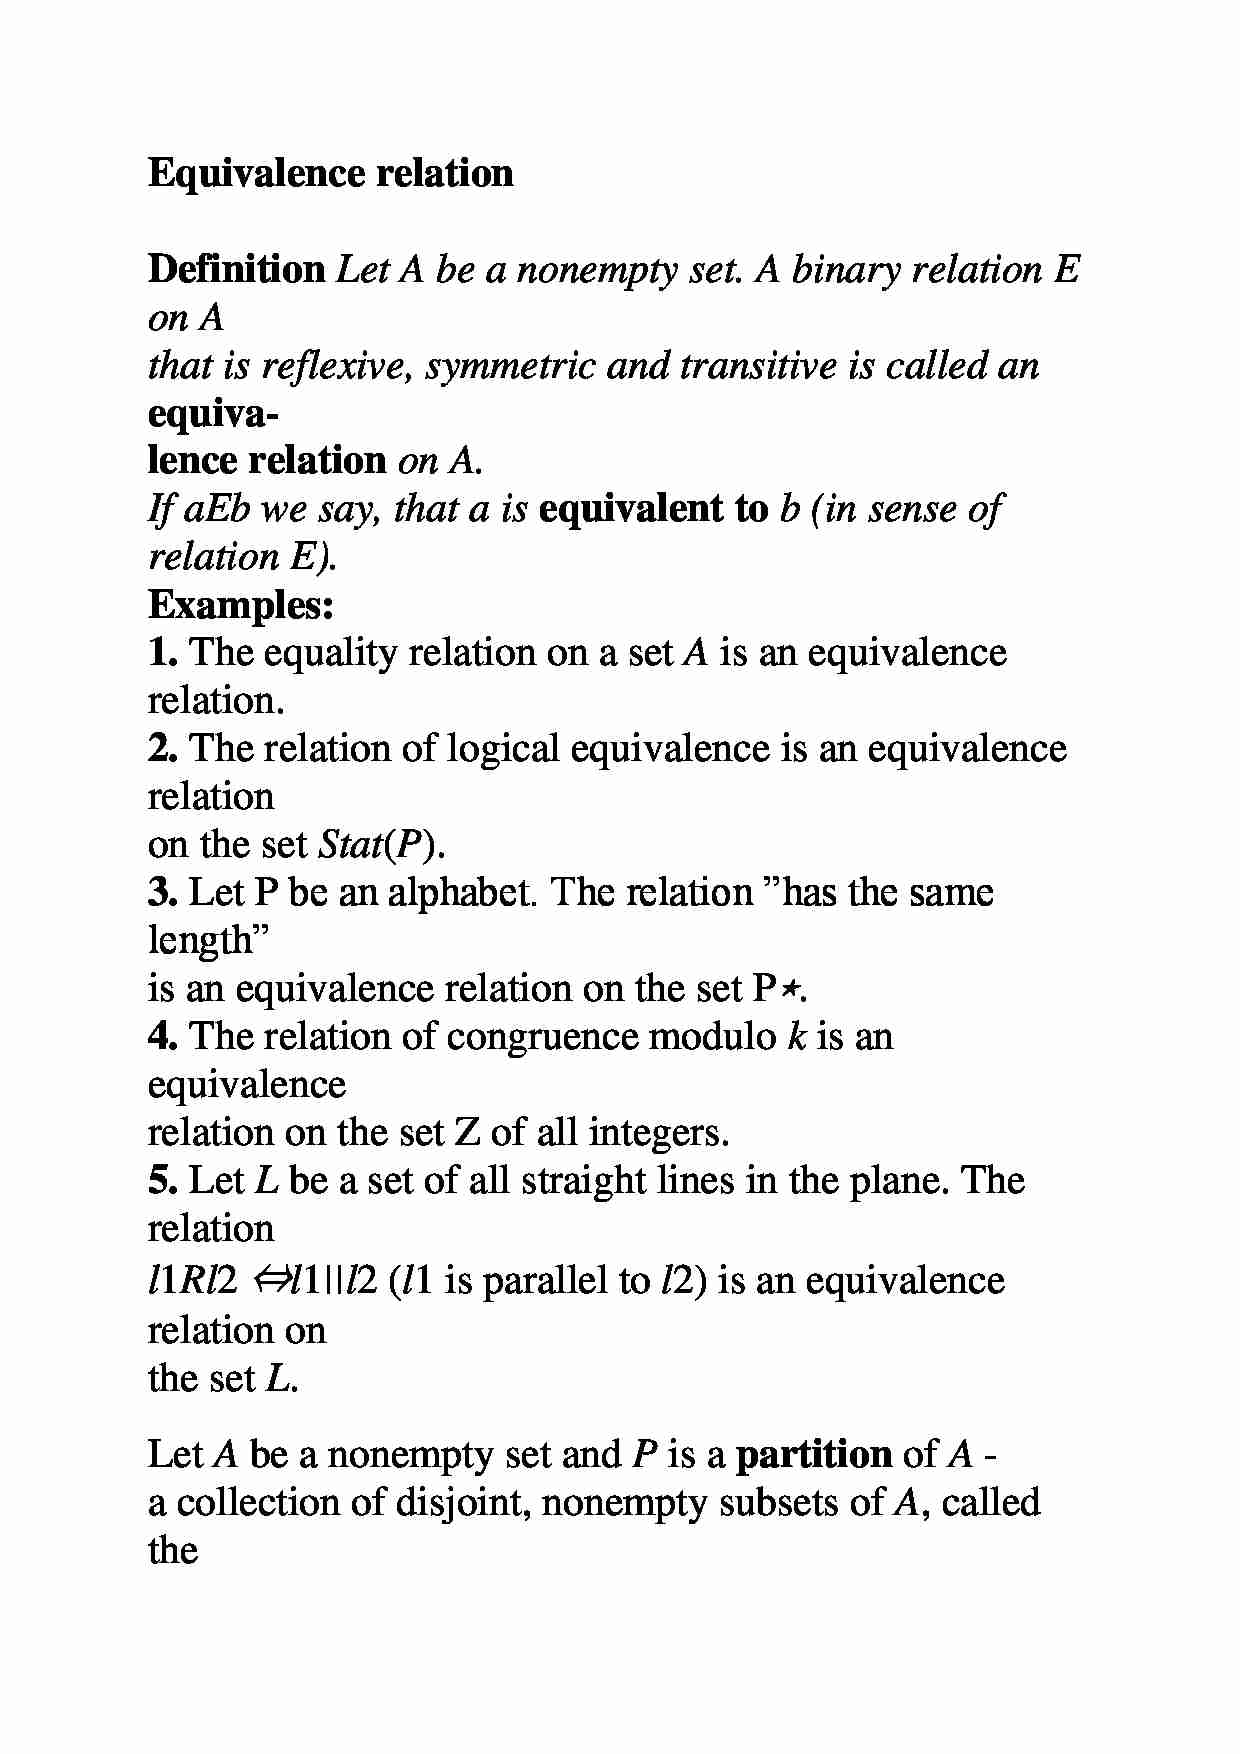 Relacja równoważności - Equivalence relation - strona 1